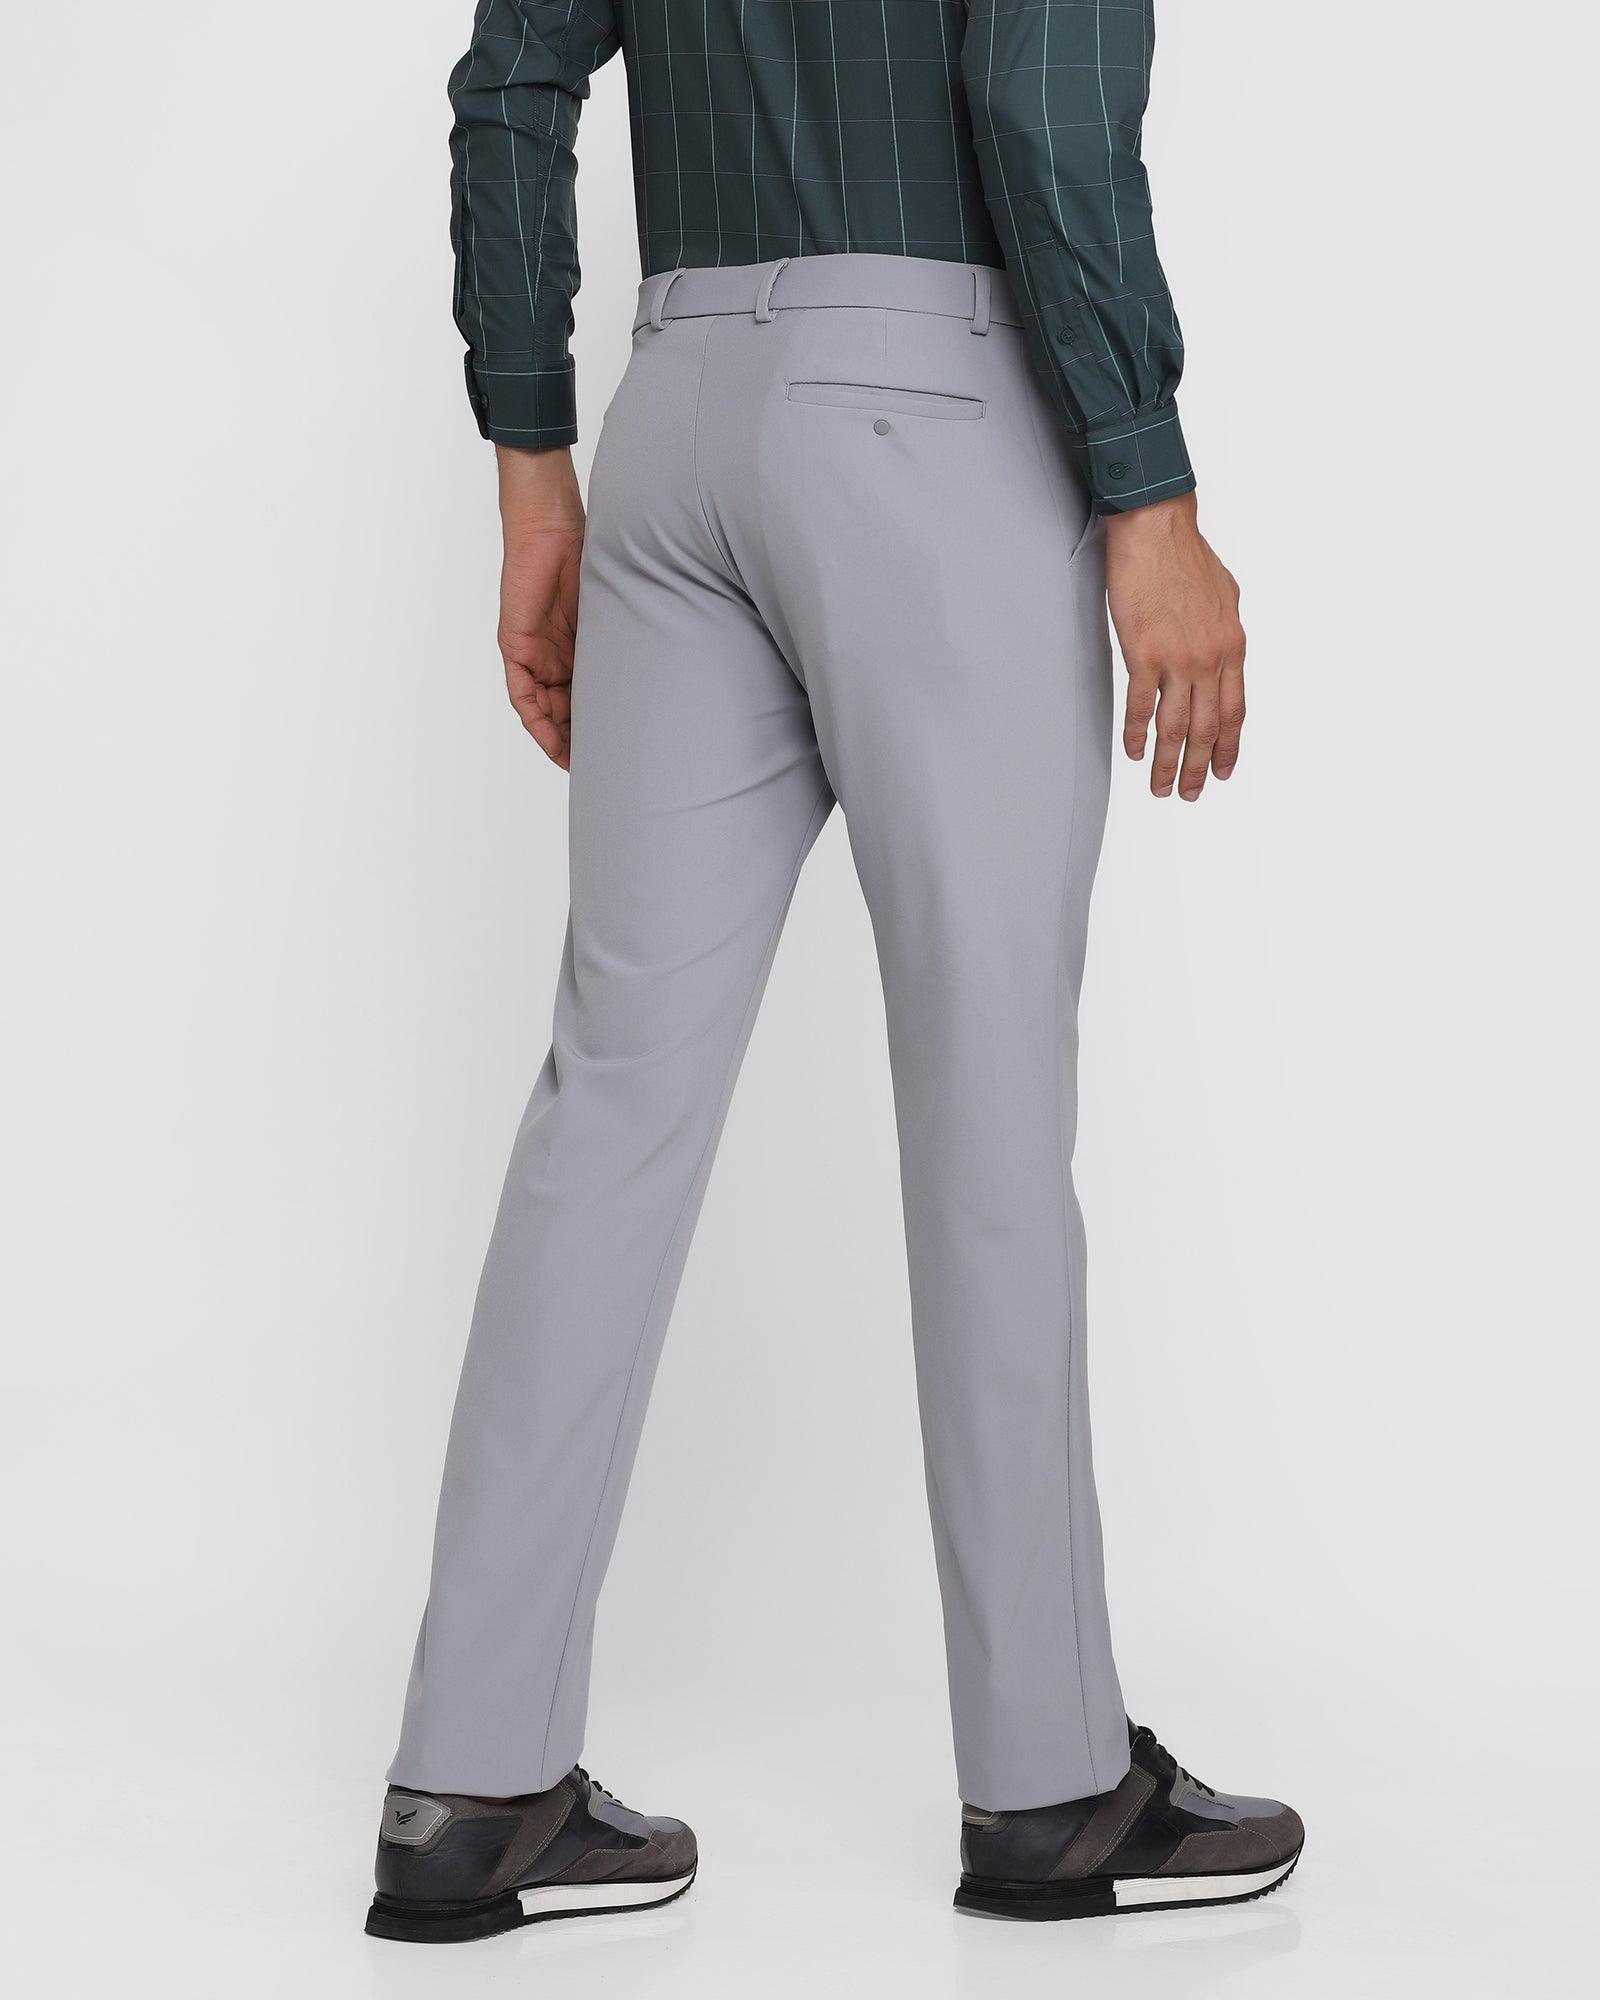 techpro formal trousers in grey b 91 ashley blackberrys clothing 2